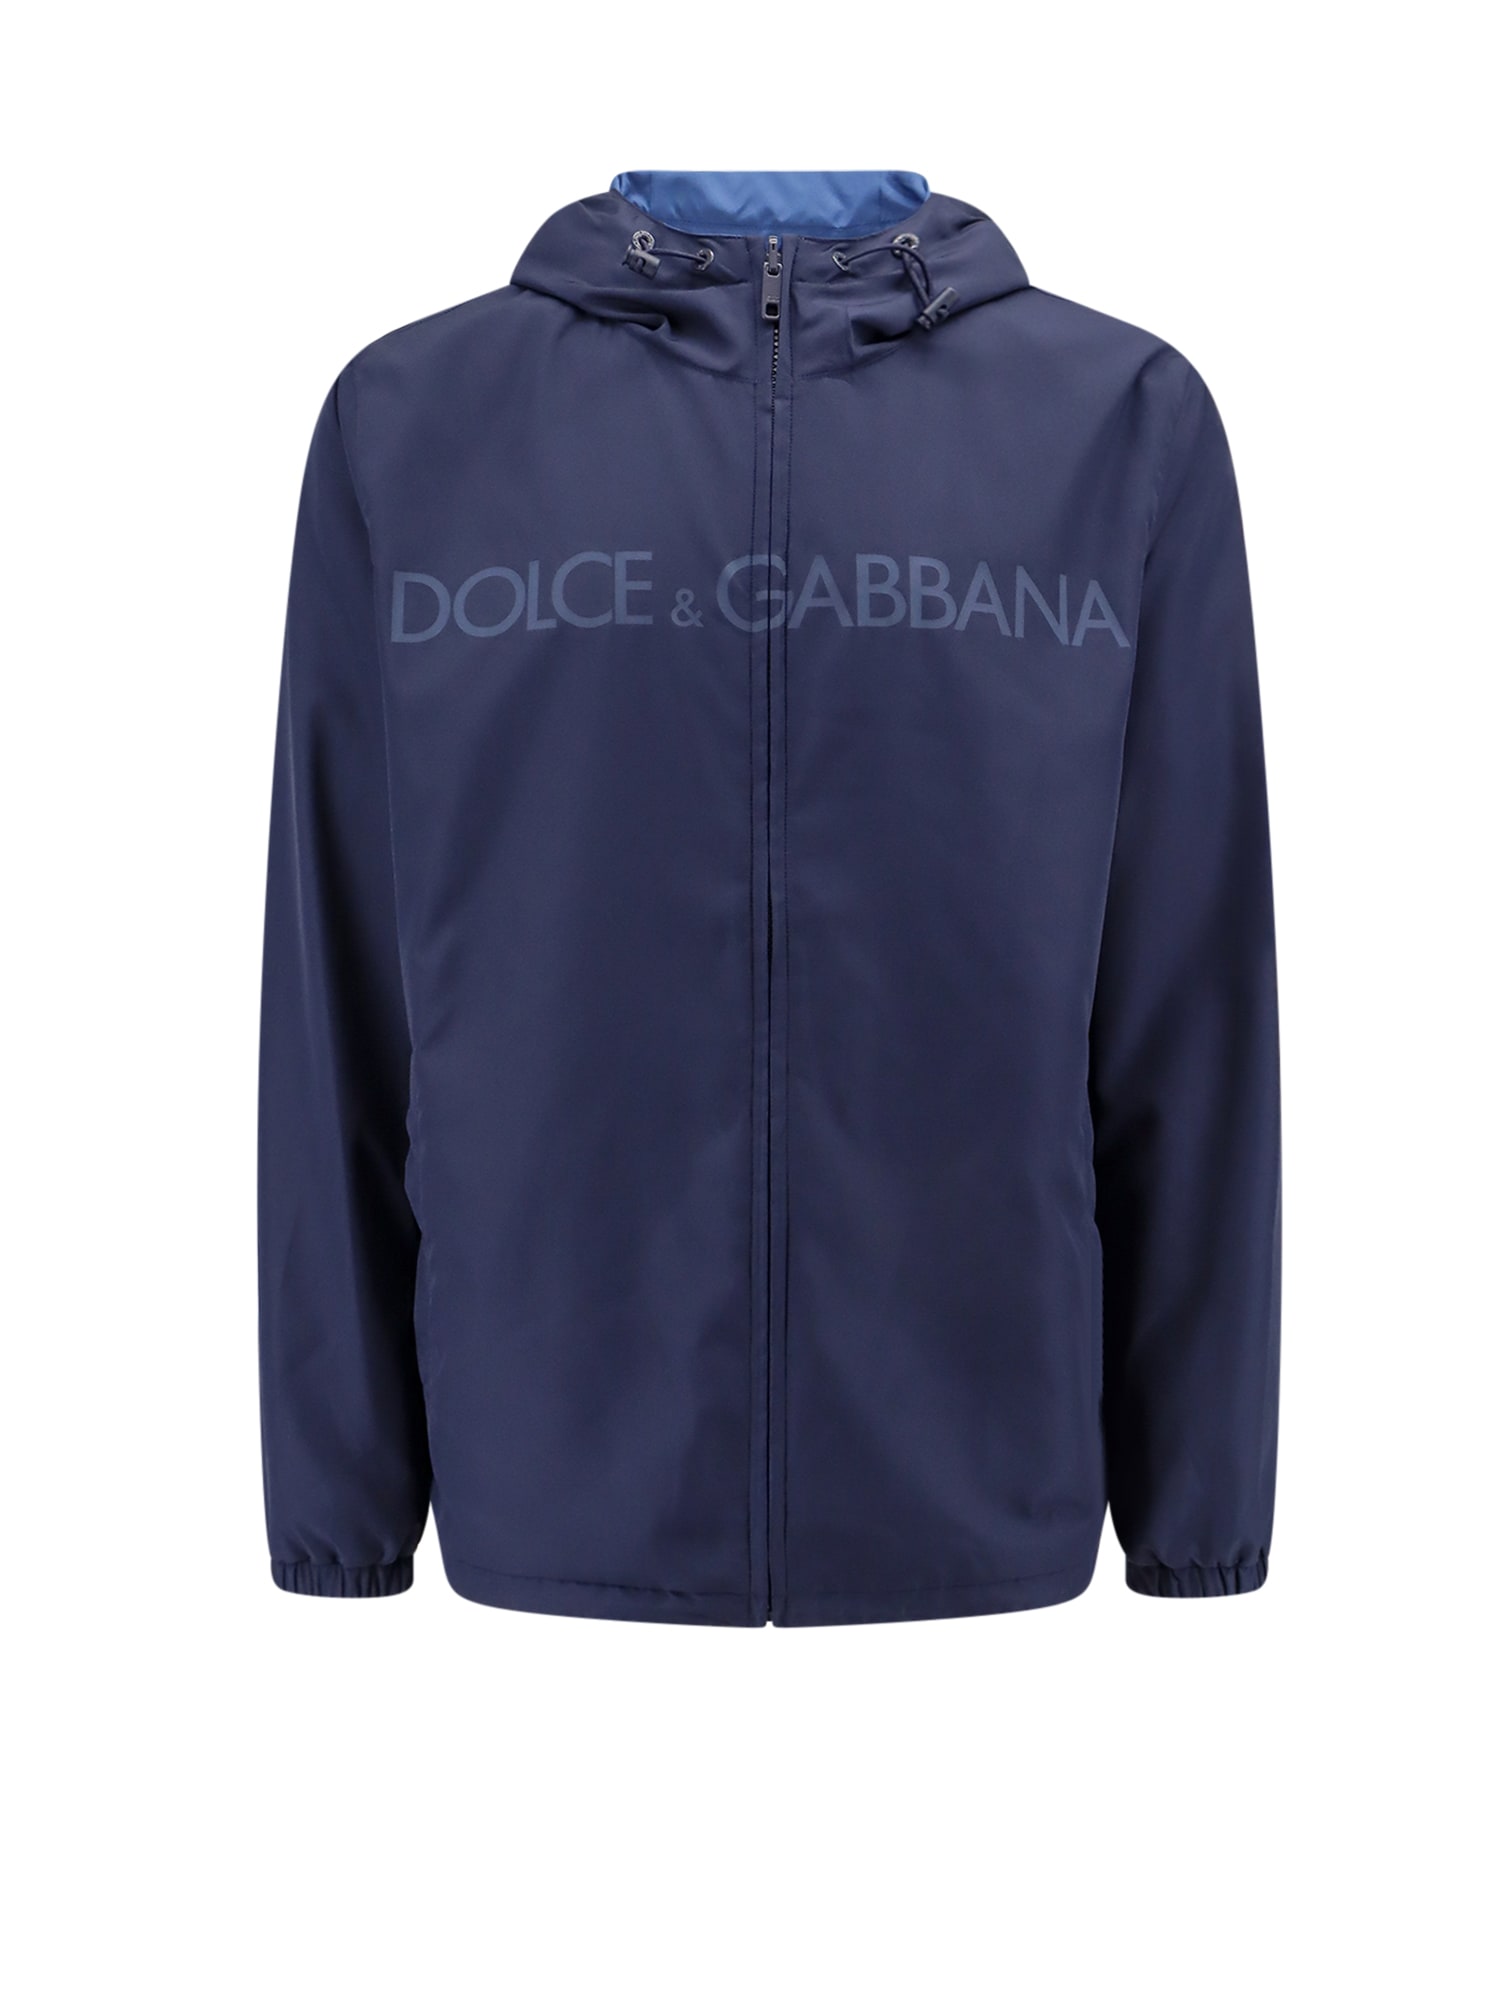 Dolce & Gabbana Windbreaker Logo Jacket